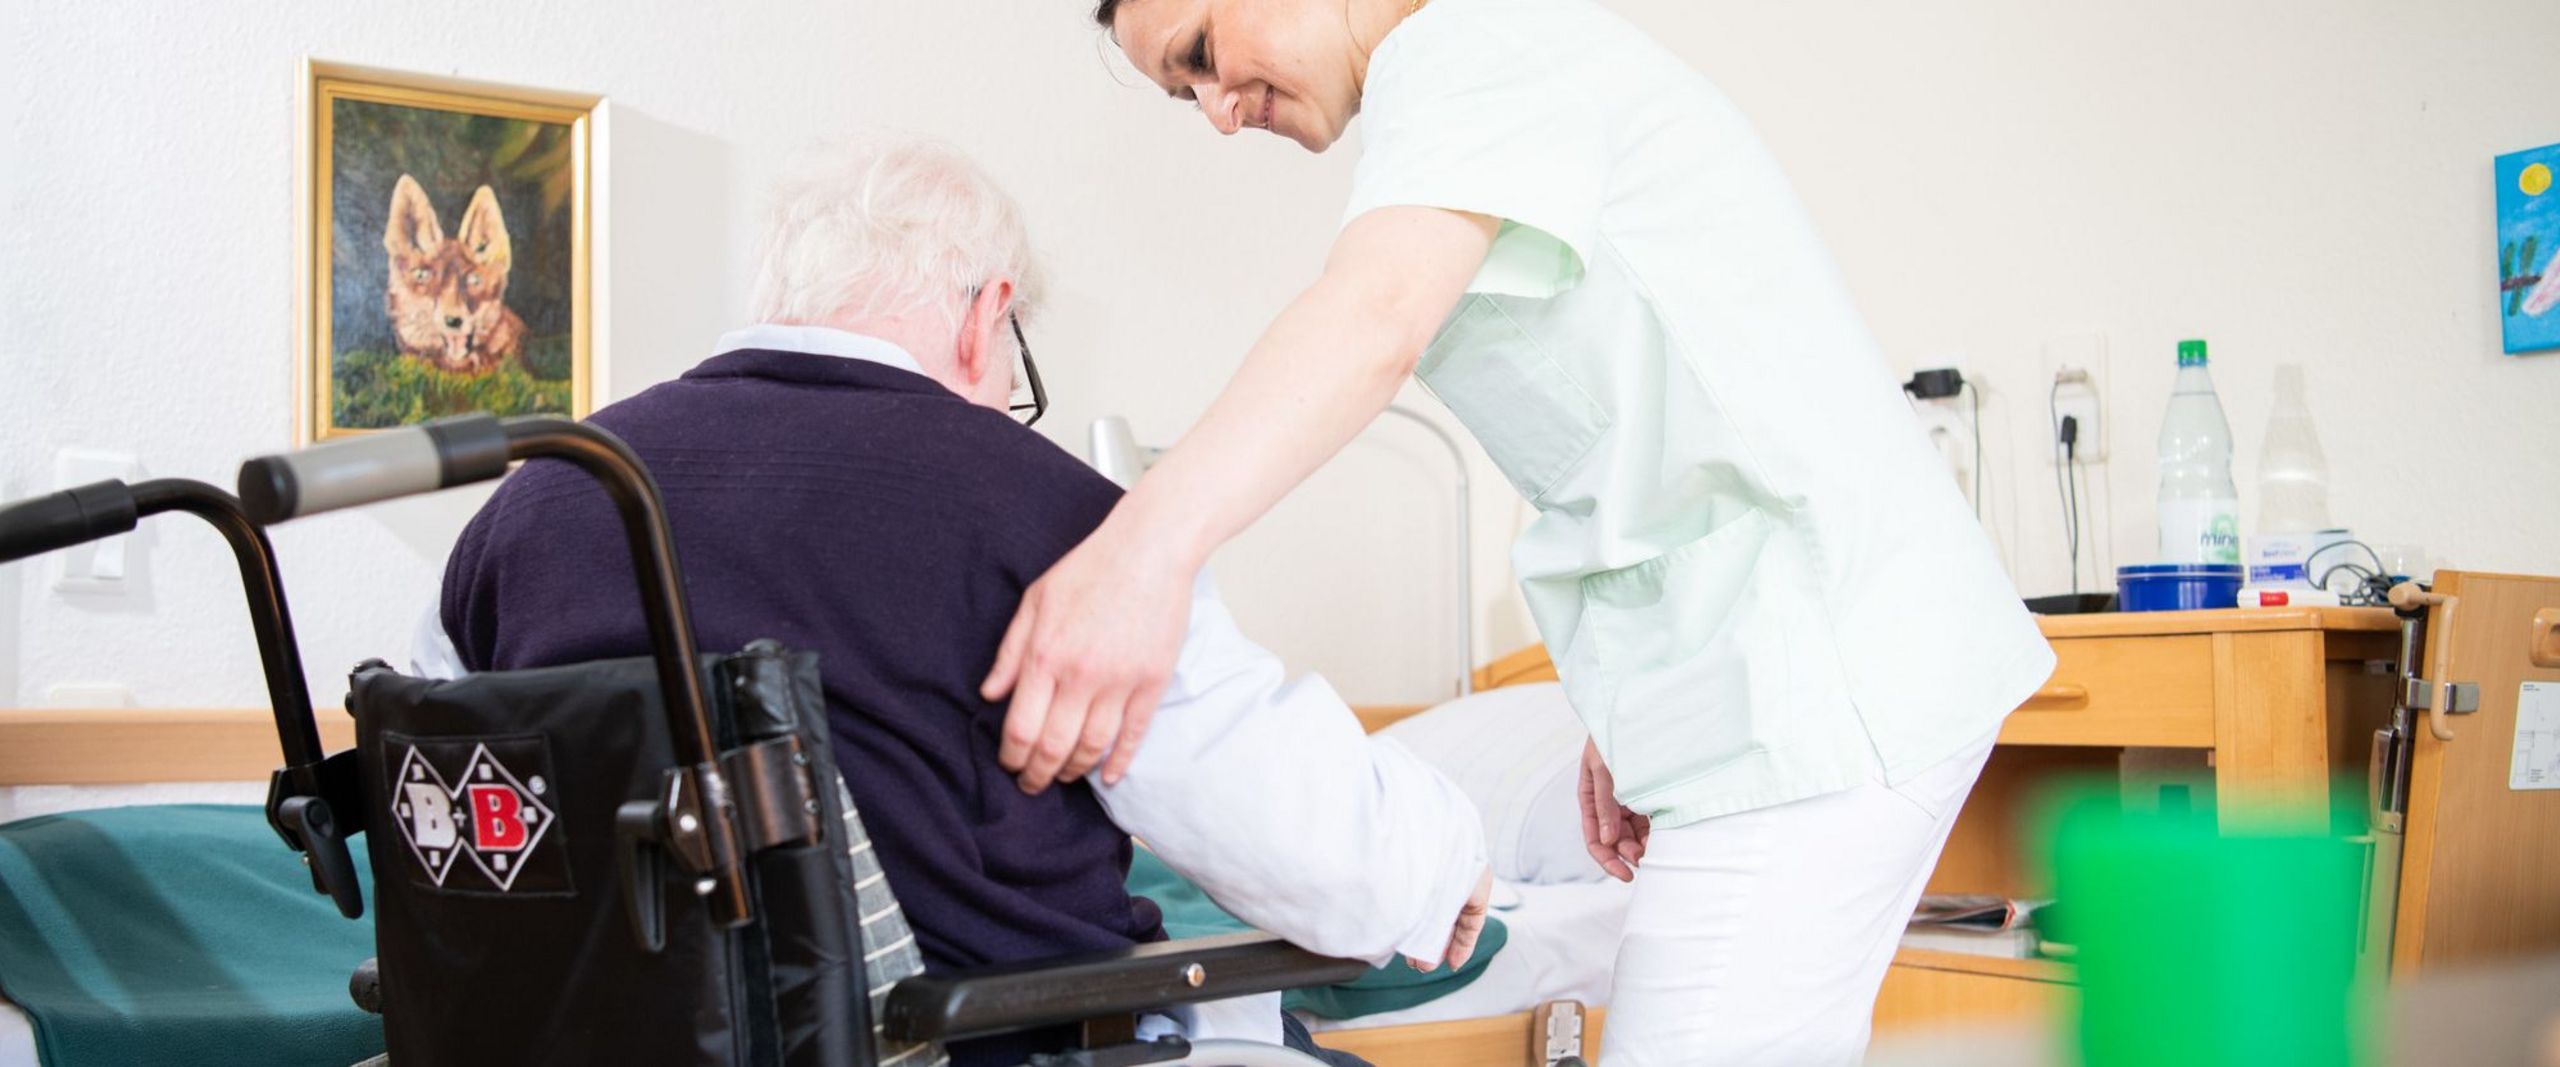 Eine Altenpflegerin hilft einem älteren Mann, sich in einen Rollstuhl zu setzen.